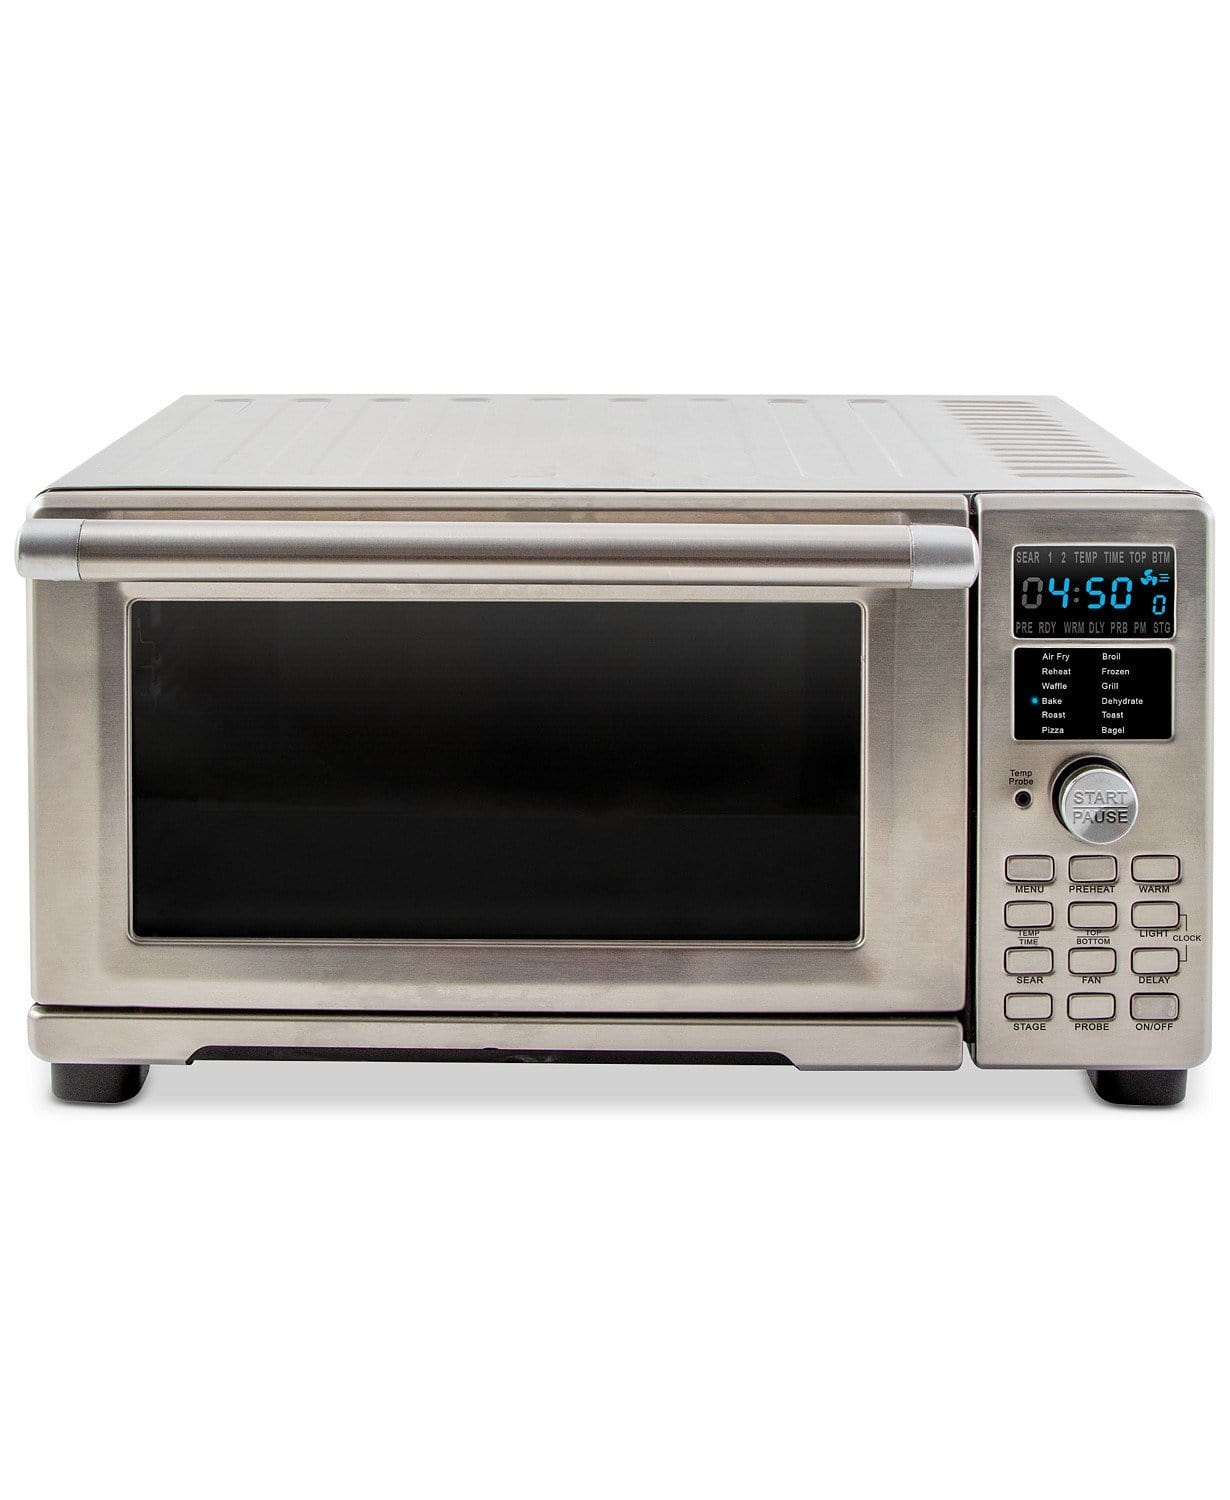 Nuwave Household Nuwave - Air Fryer Toaster Oven